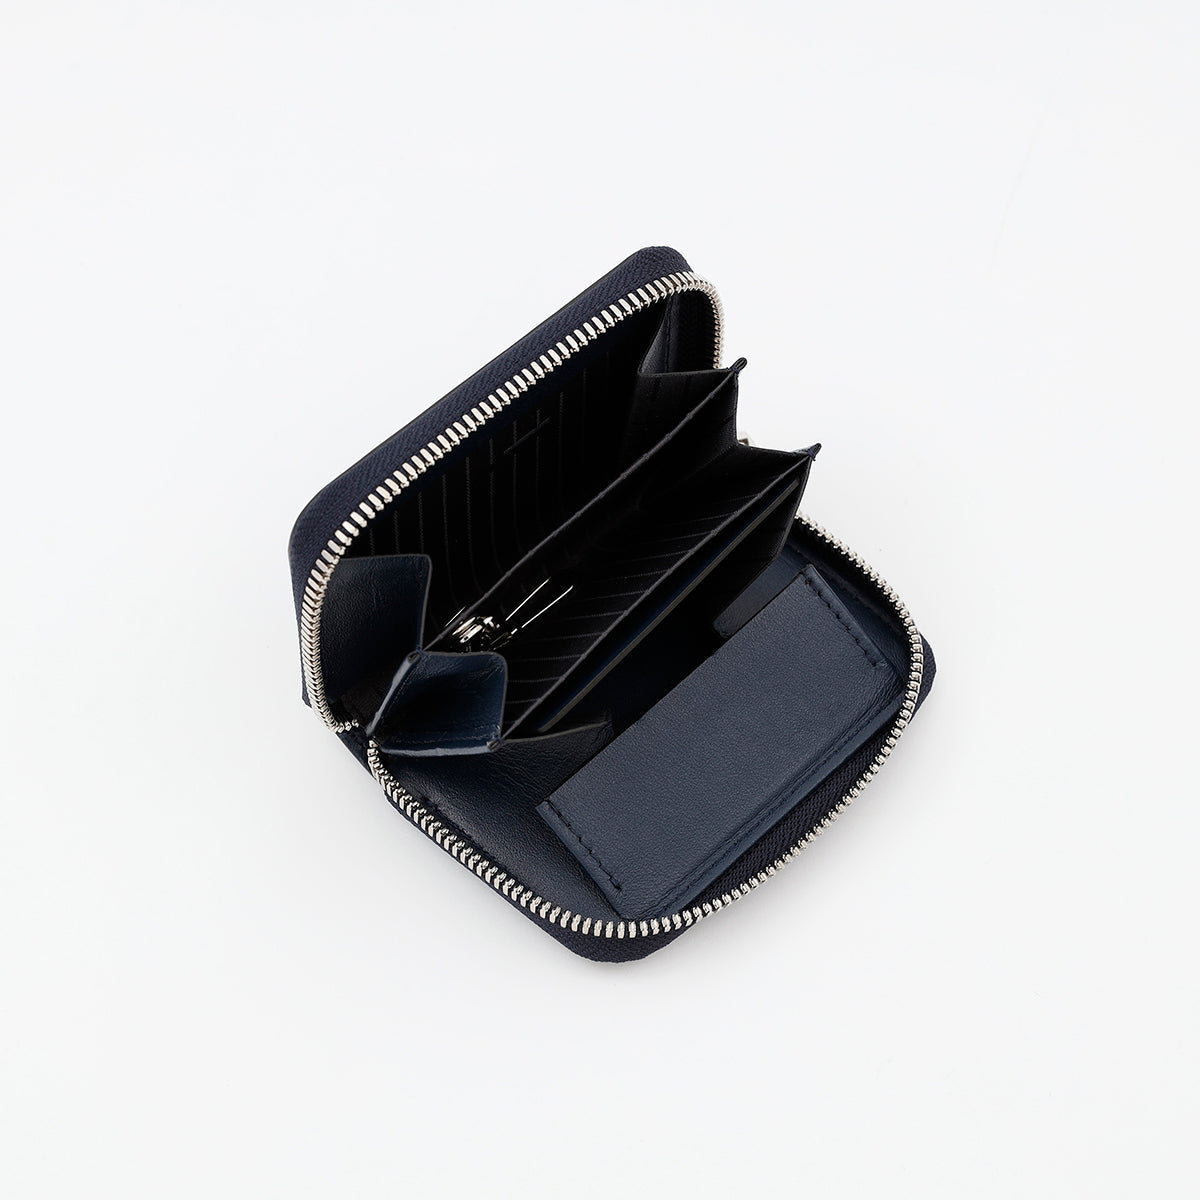 ITTI (イッチ) | CRISTY COIN CARD WLT / AIZAN(クリスティコインカードウォレット/藍桟革) レザー 漆 メンズ レディース ビジネス ミニ財布 さいふ サイフ 伝統工芸品